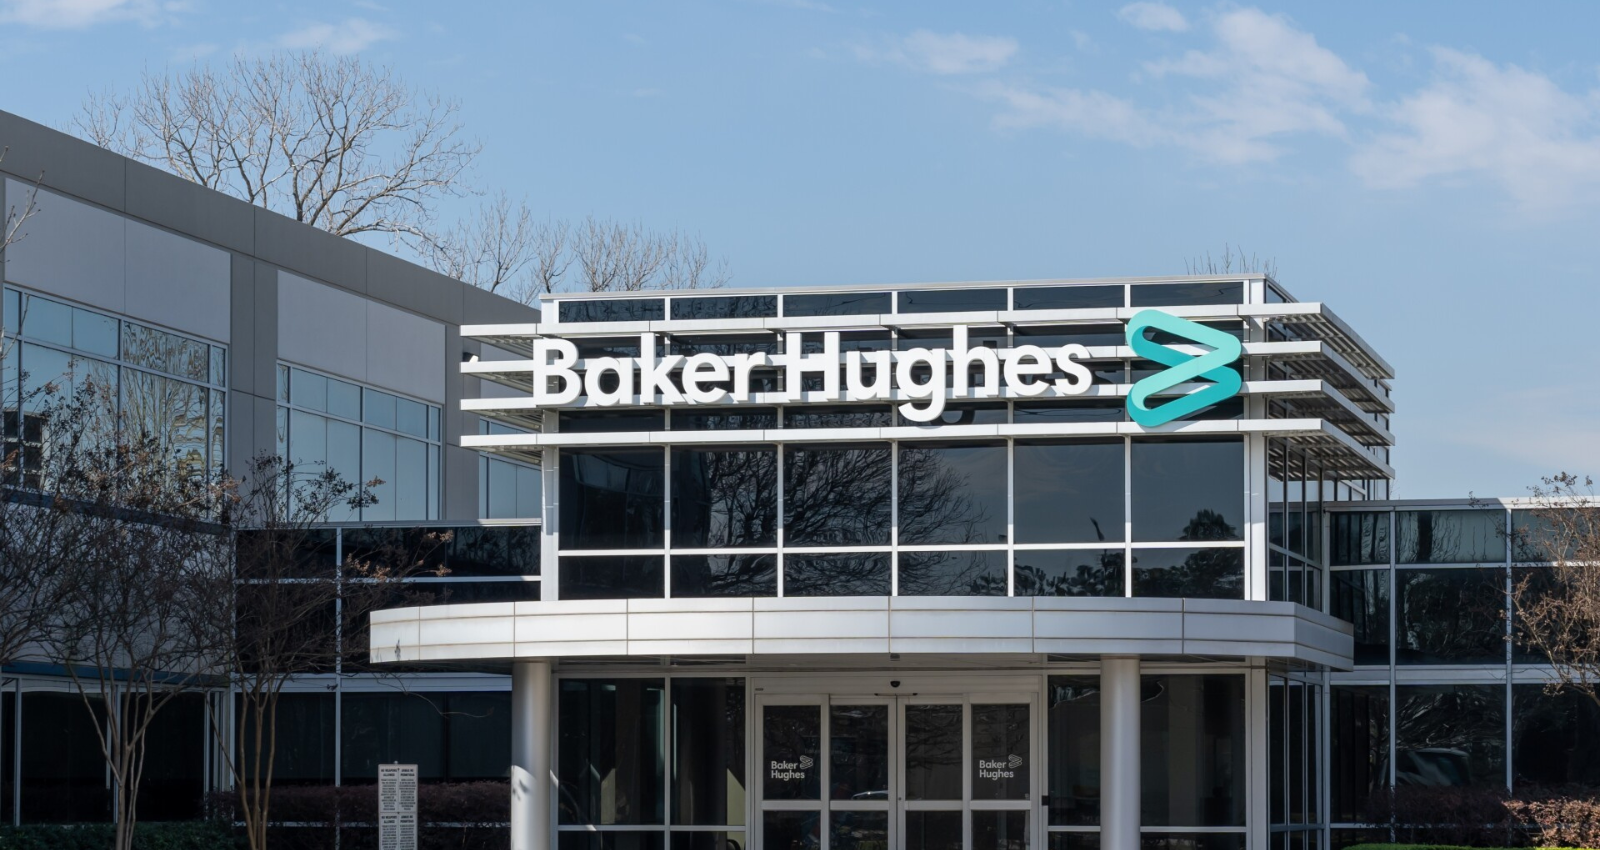 Baker Hughes Freshers Hiring for DevOps Engineer